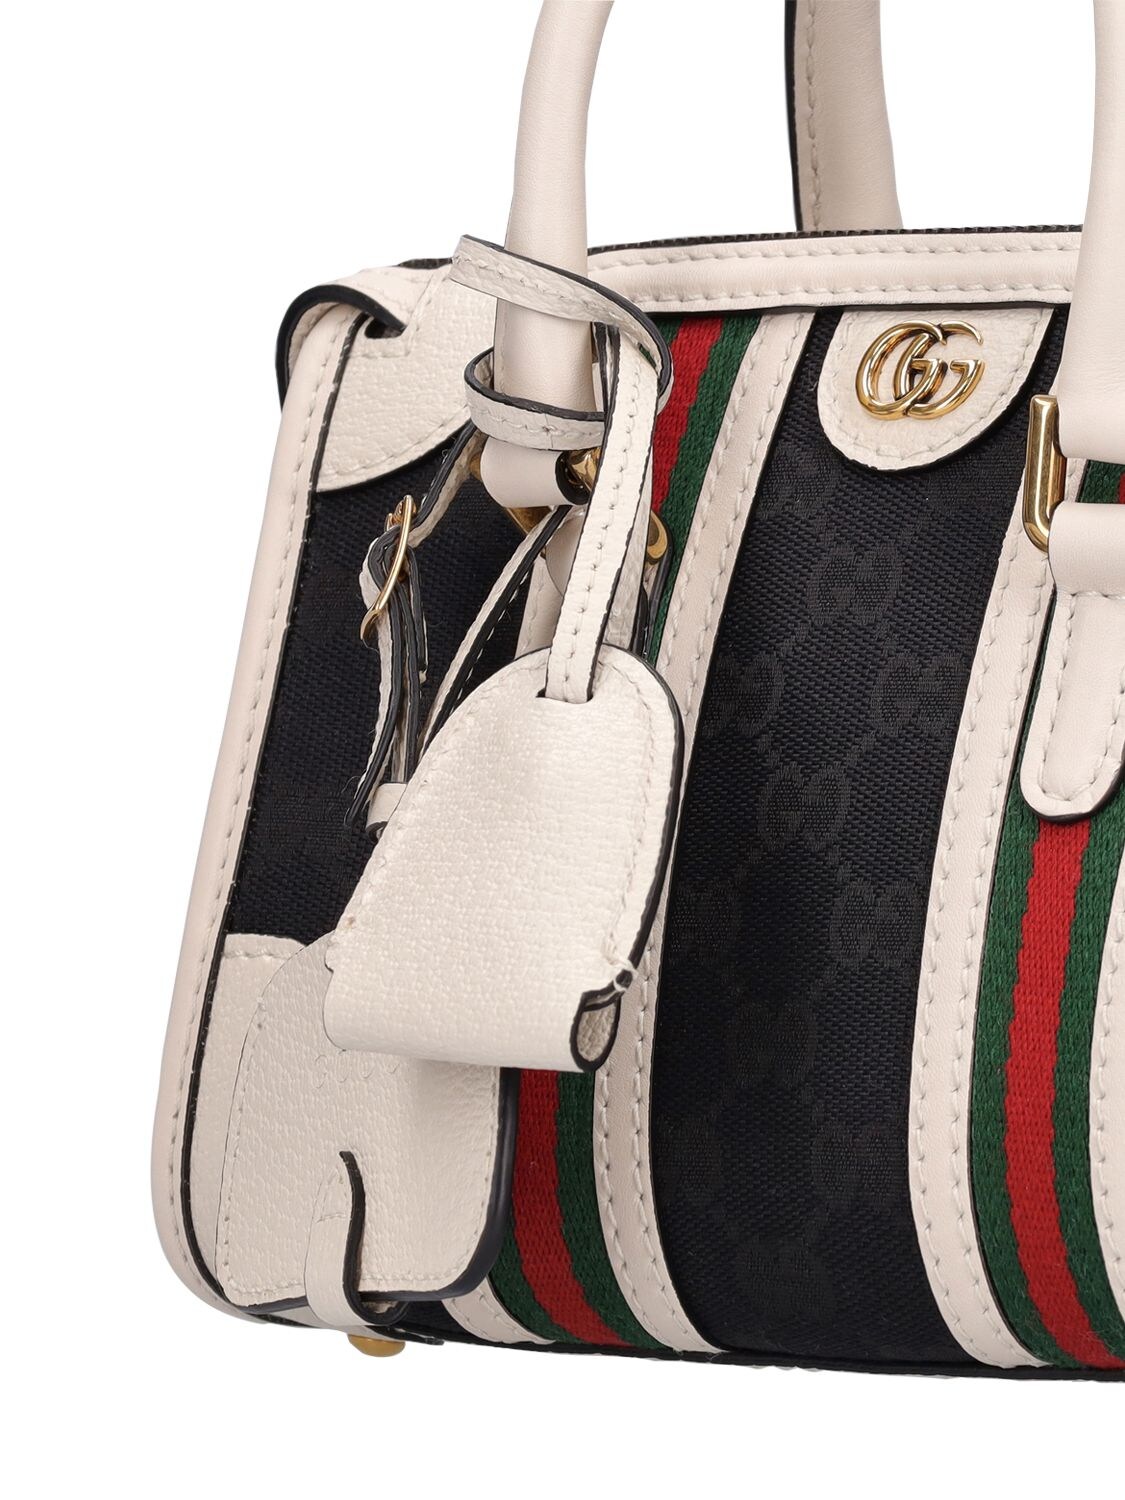 Gucci Small Leather Tote Bag – Glamorizta